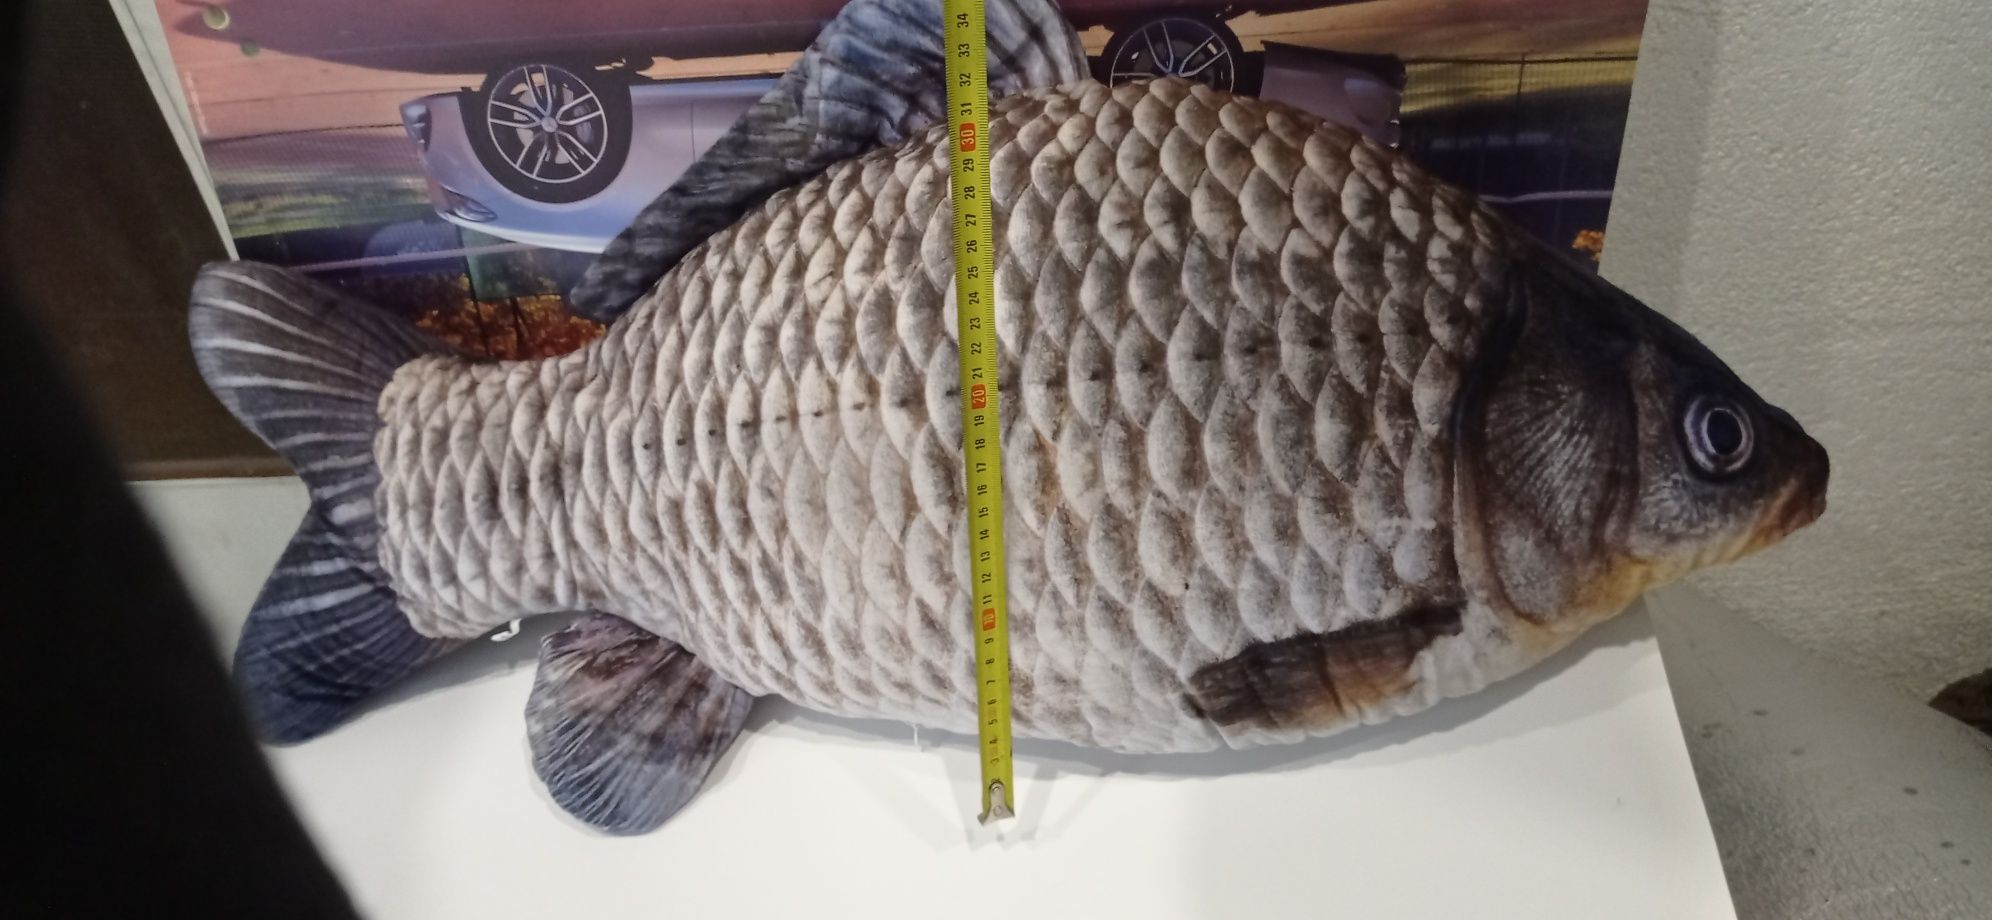 Poduszka ryba 75cm